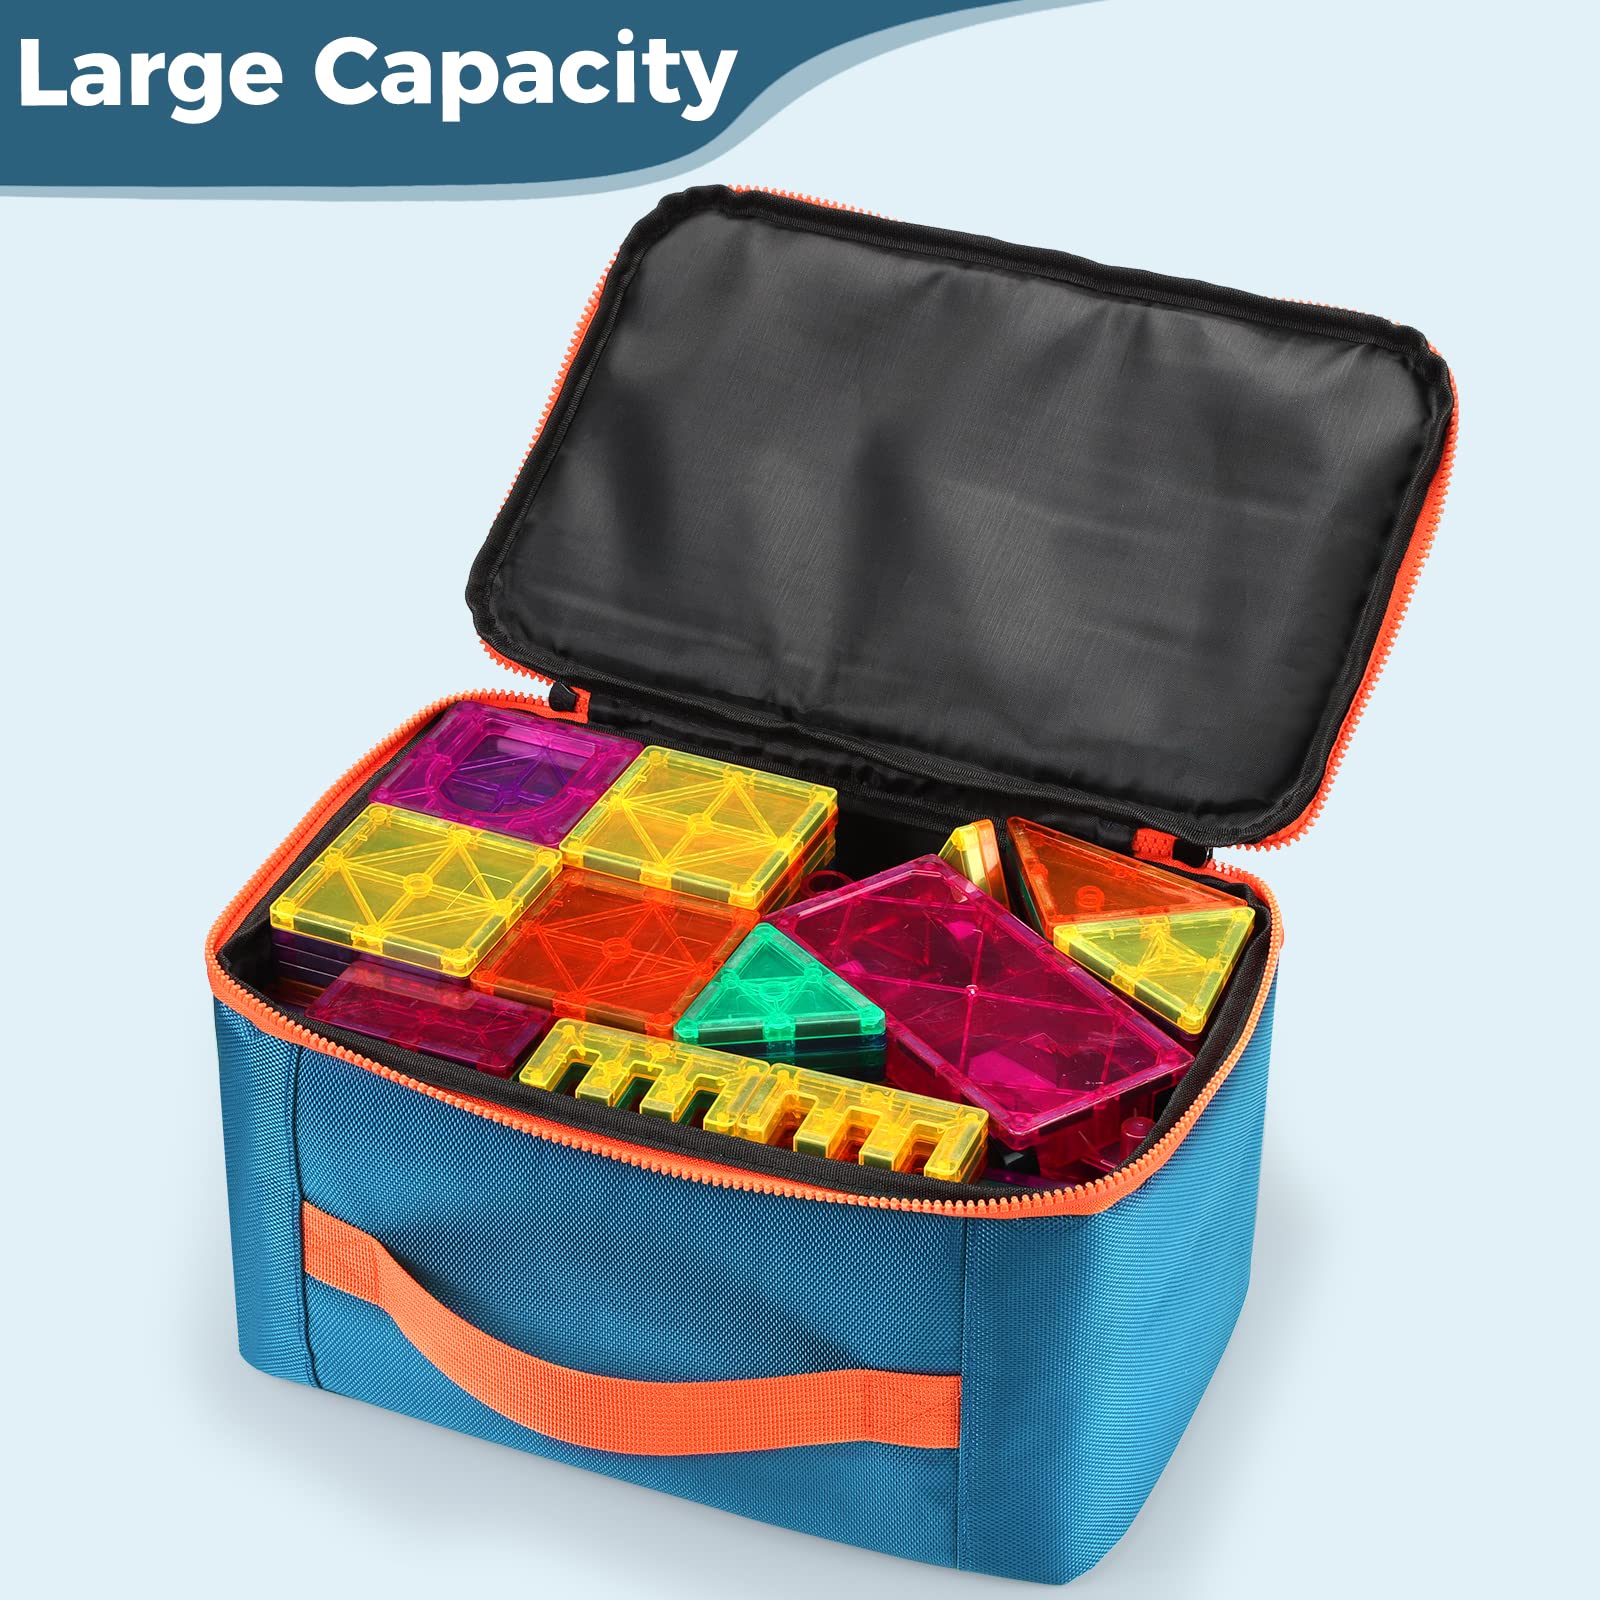 Gemmicc 2PCS Magnetic Car Set + Toy Carry Bag